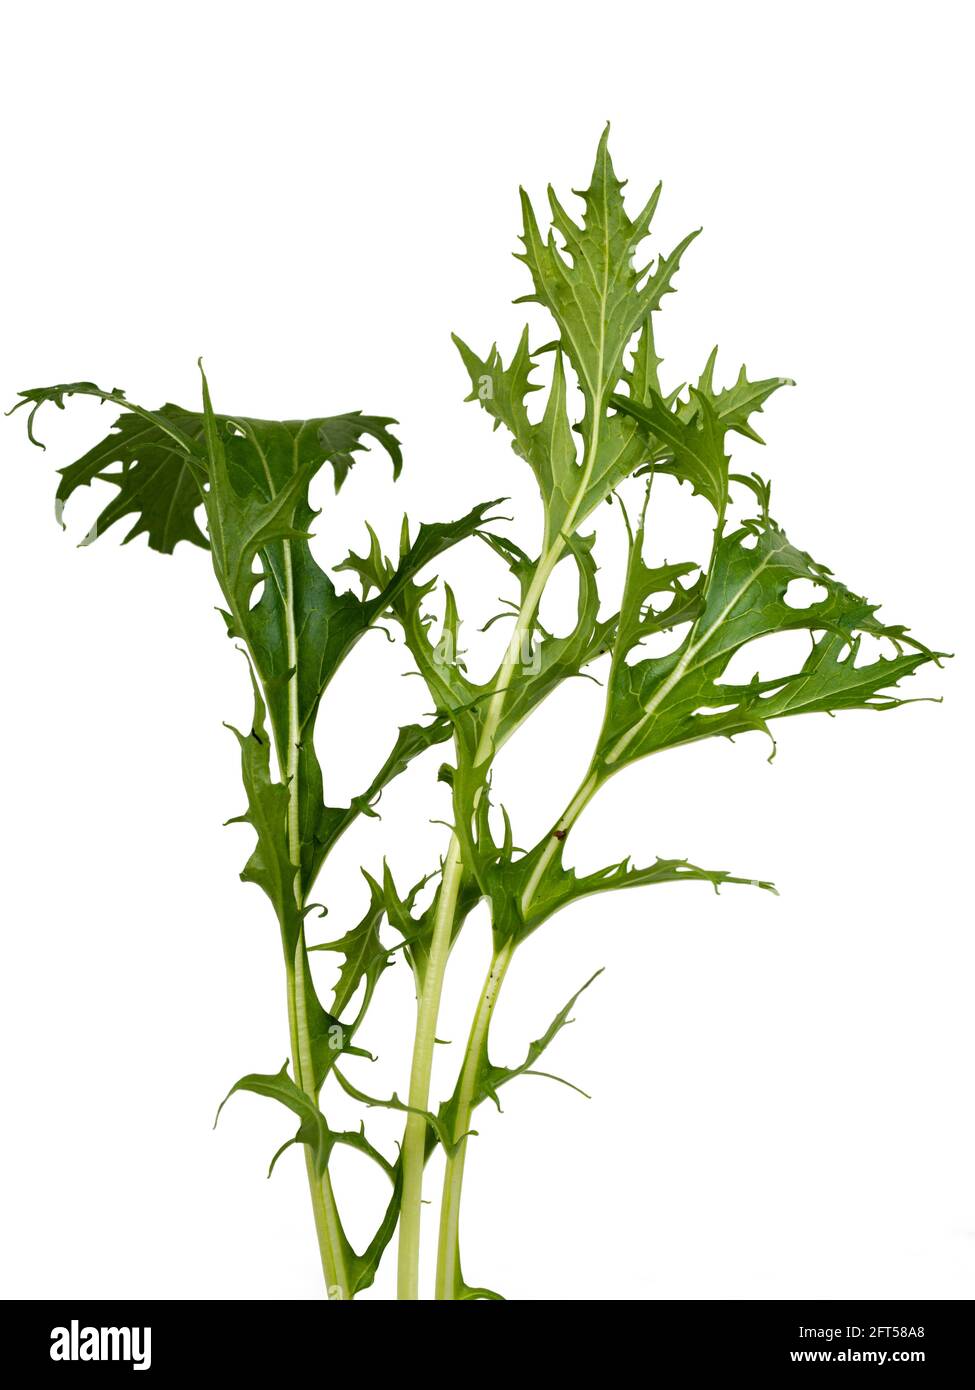 Frisch gepflückte Blätter des biologisch angebauten Salats mizuna, Brassica rapa var. japonica, auf weißem Hintergrund Stockfoto